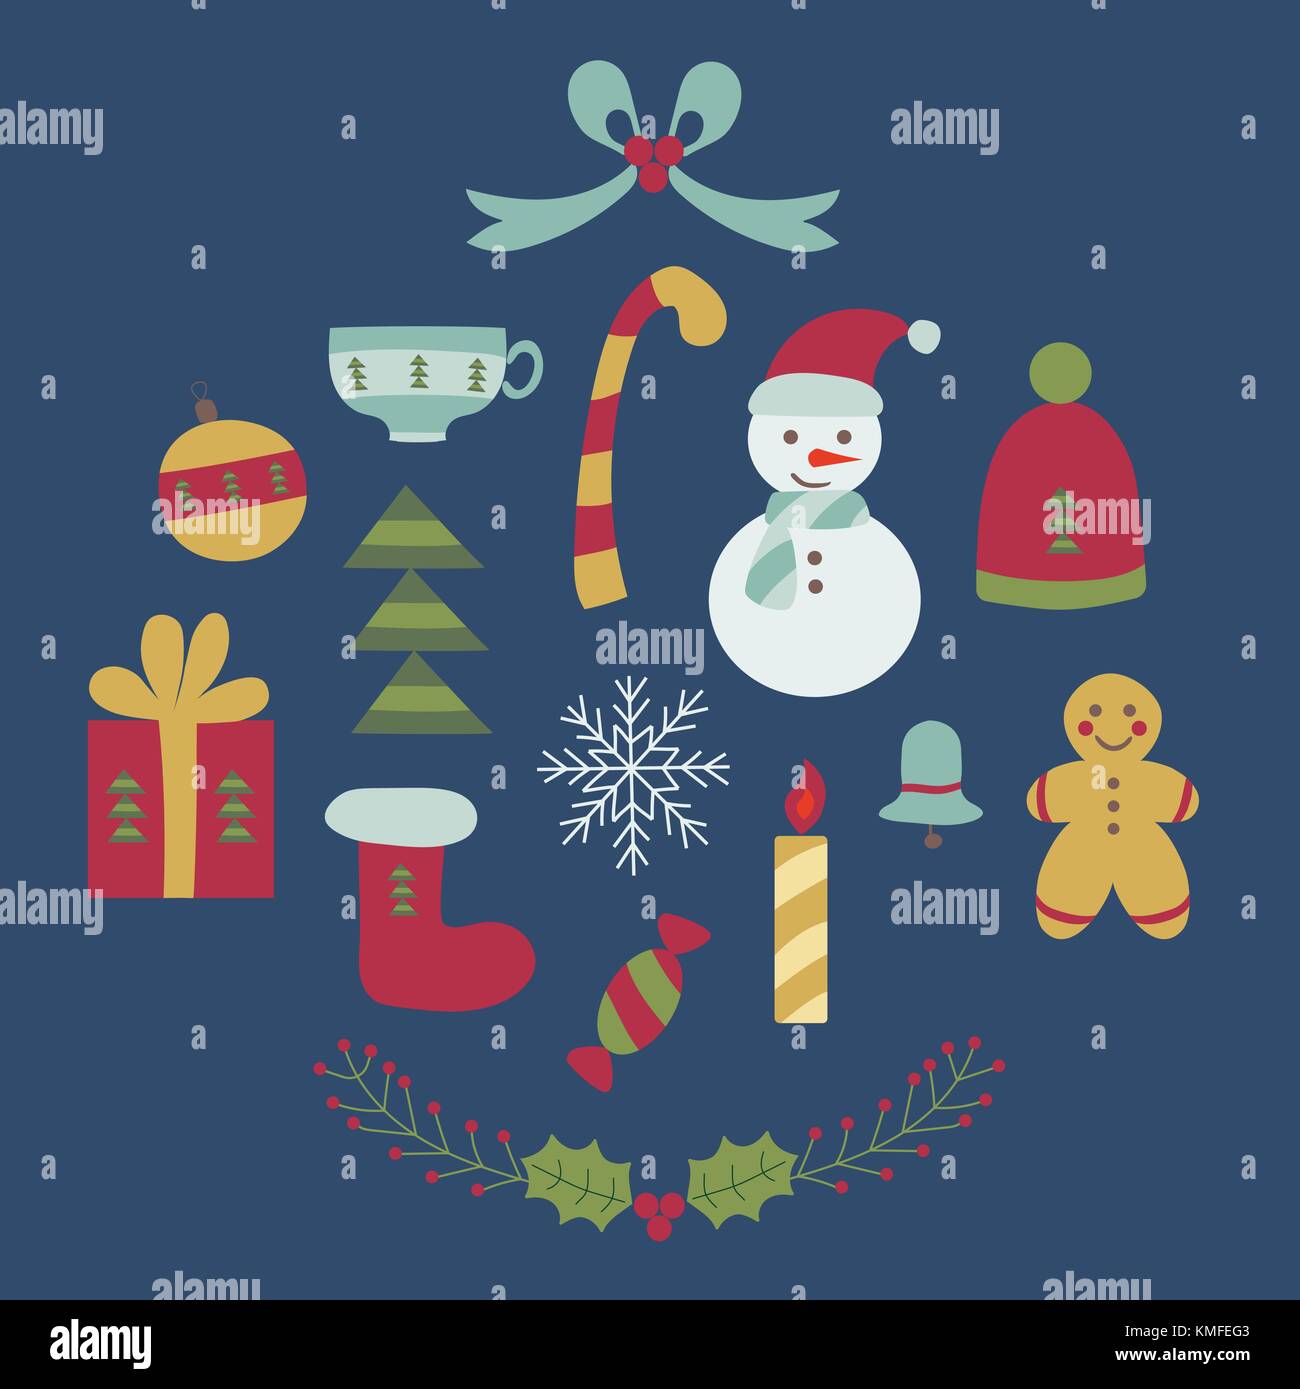 Der traditionelle Weihnachten Elemente in doodle Stil. cartoon Weihnachten Icons collection Mit Gingerbread Man, Tannenbaum, Rote Socke, Schneemann, Geschenkbox, rowa Stock Vektor